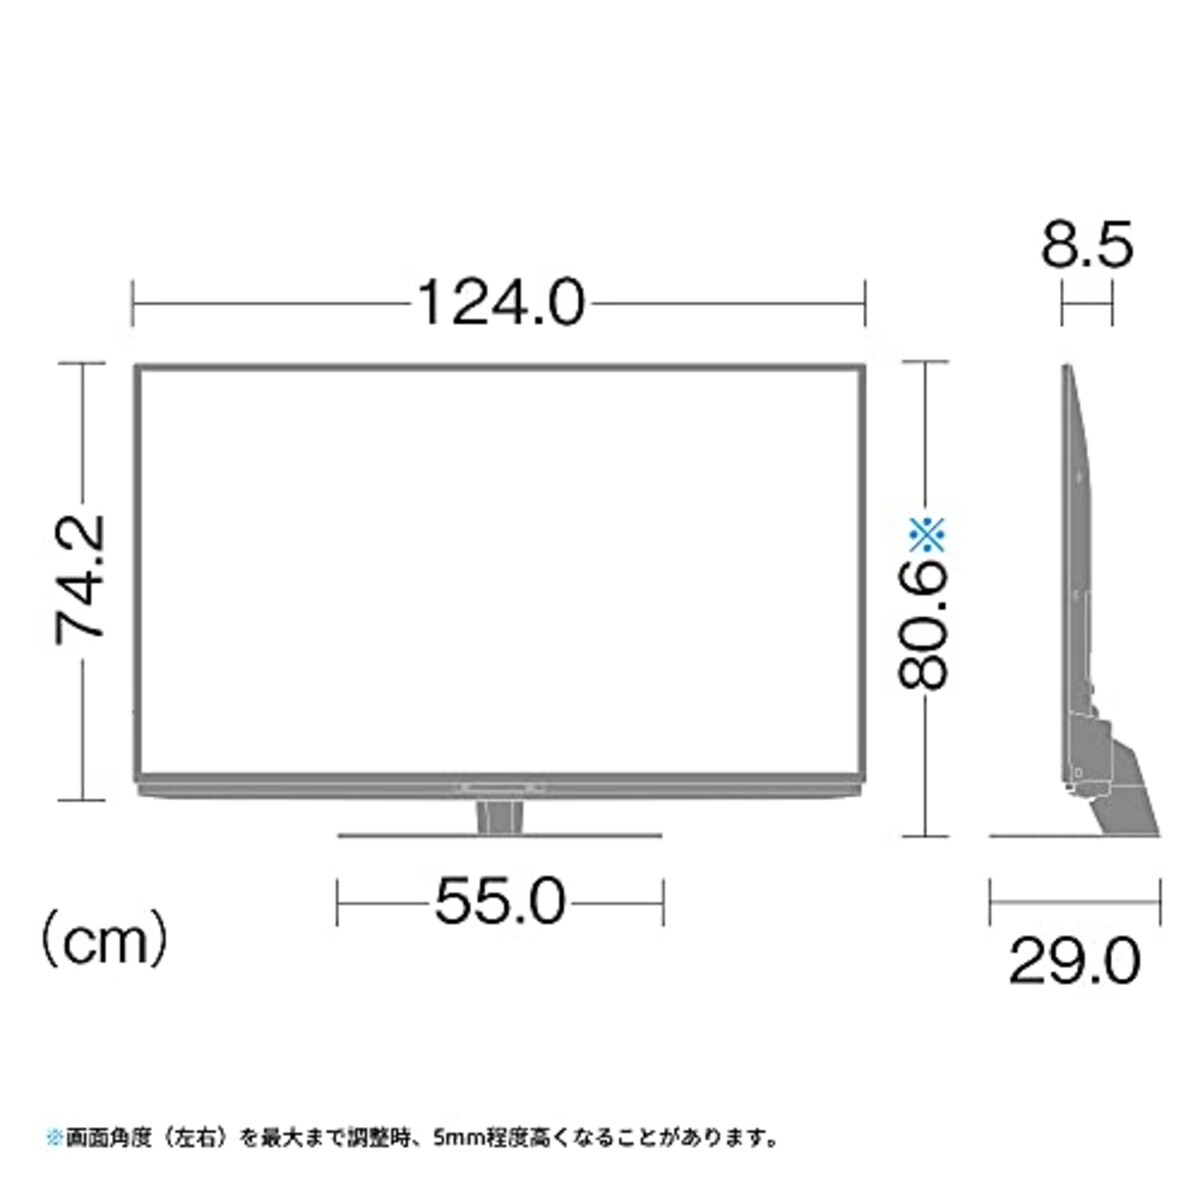  シャープ 55V型 4K 液晶 テレビ AQUOS 4T-C55DN1 N-Blackパネル 倍速液晶 Android TV (2021年モデル)画像16 